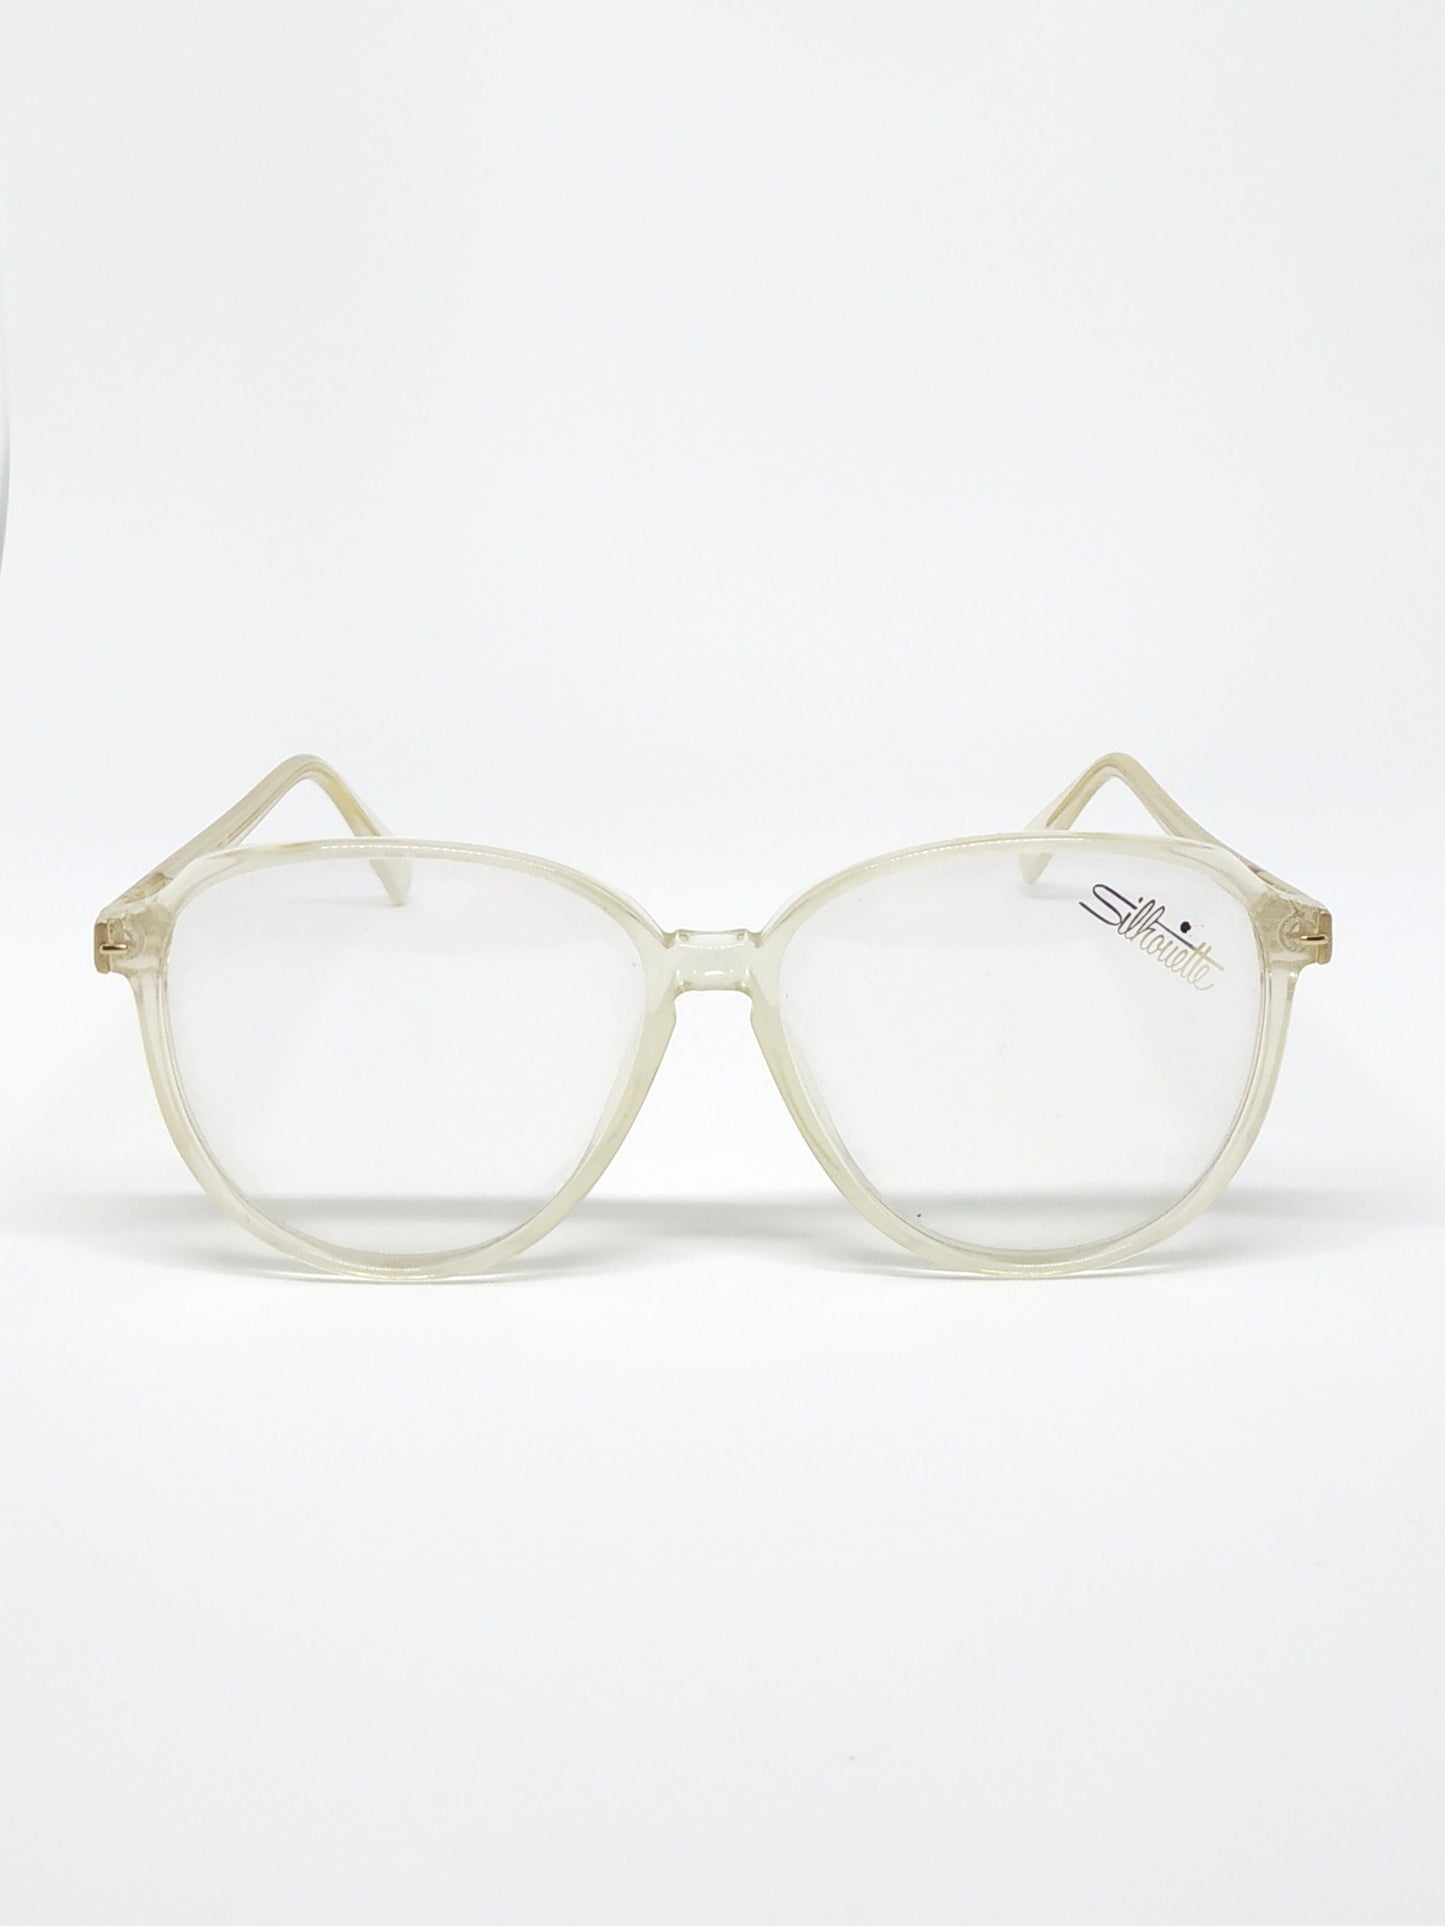 Vintage New old stock eyeglasses frames. Mod. M1252